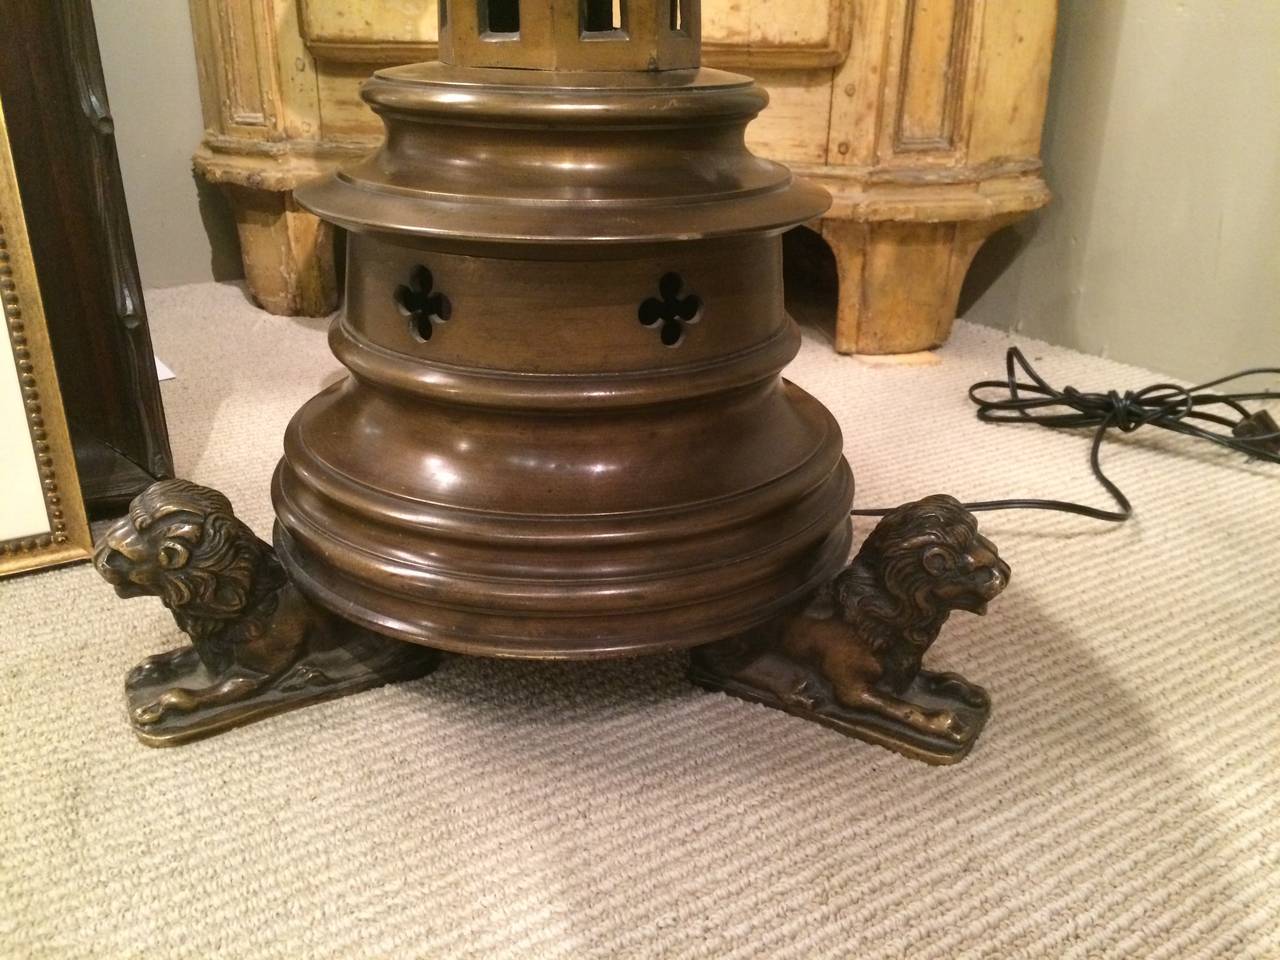 Grand et audacieux candélabre gothique en bronze, aujourd'hui utilisé comme lampadaire, avec une rotation audacieuse reposant sur des pieds tripodes en forme de lion, avec une patine riche et chaleureuse.